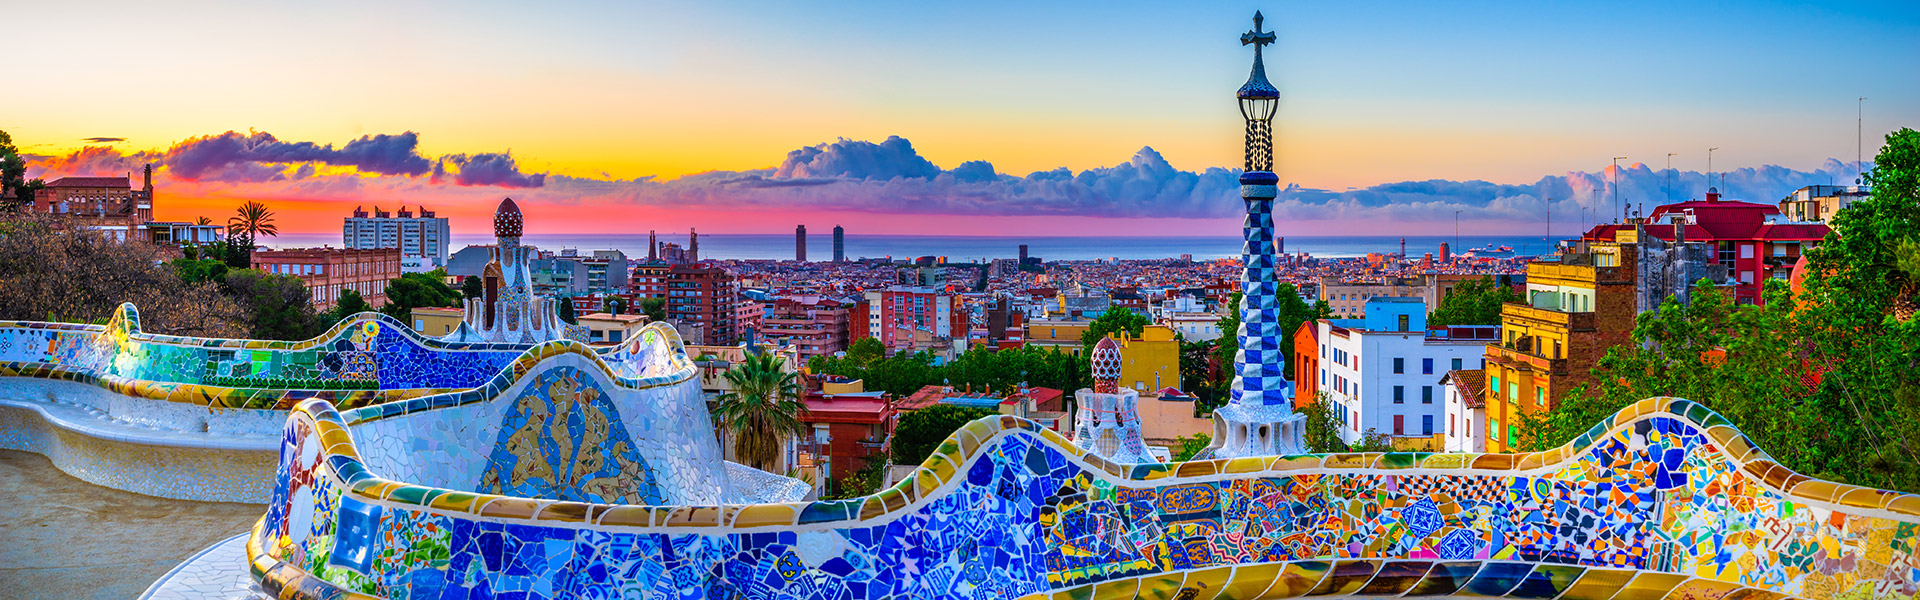 Verpassen Sie nicht die besten Angebote für eine unvergessliche Sommerreise nach SpanienBarcelona ab 109$ 